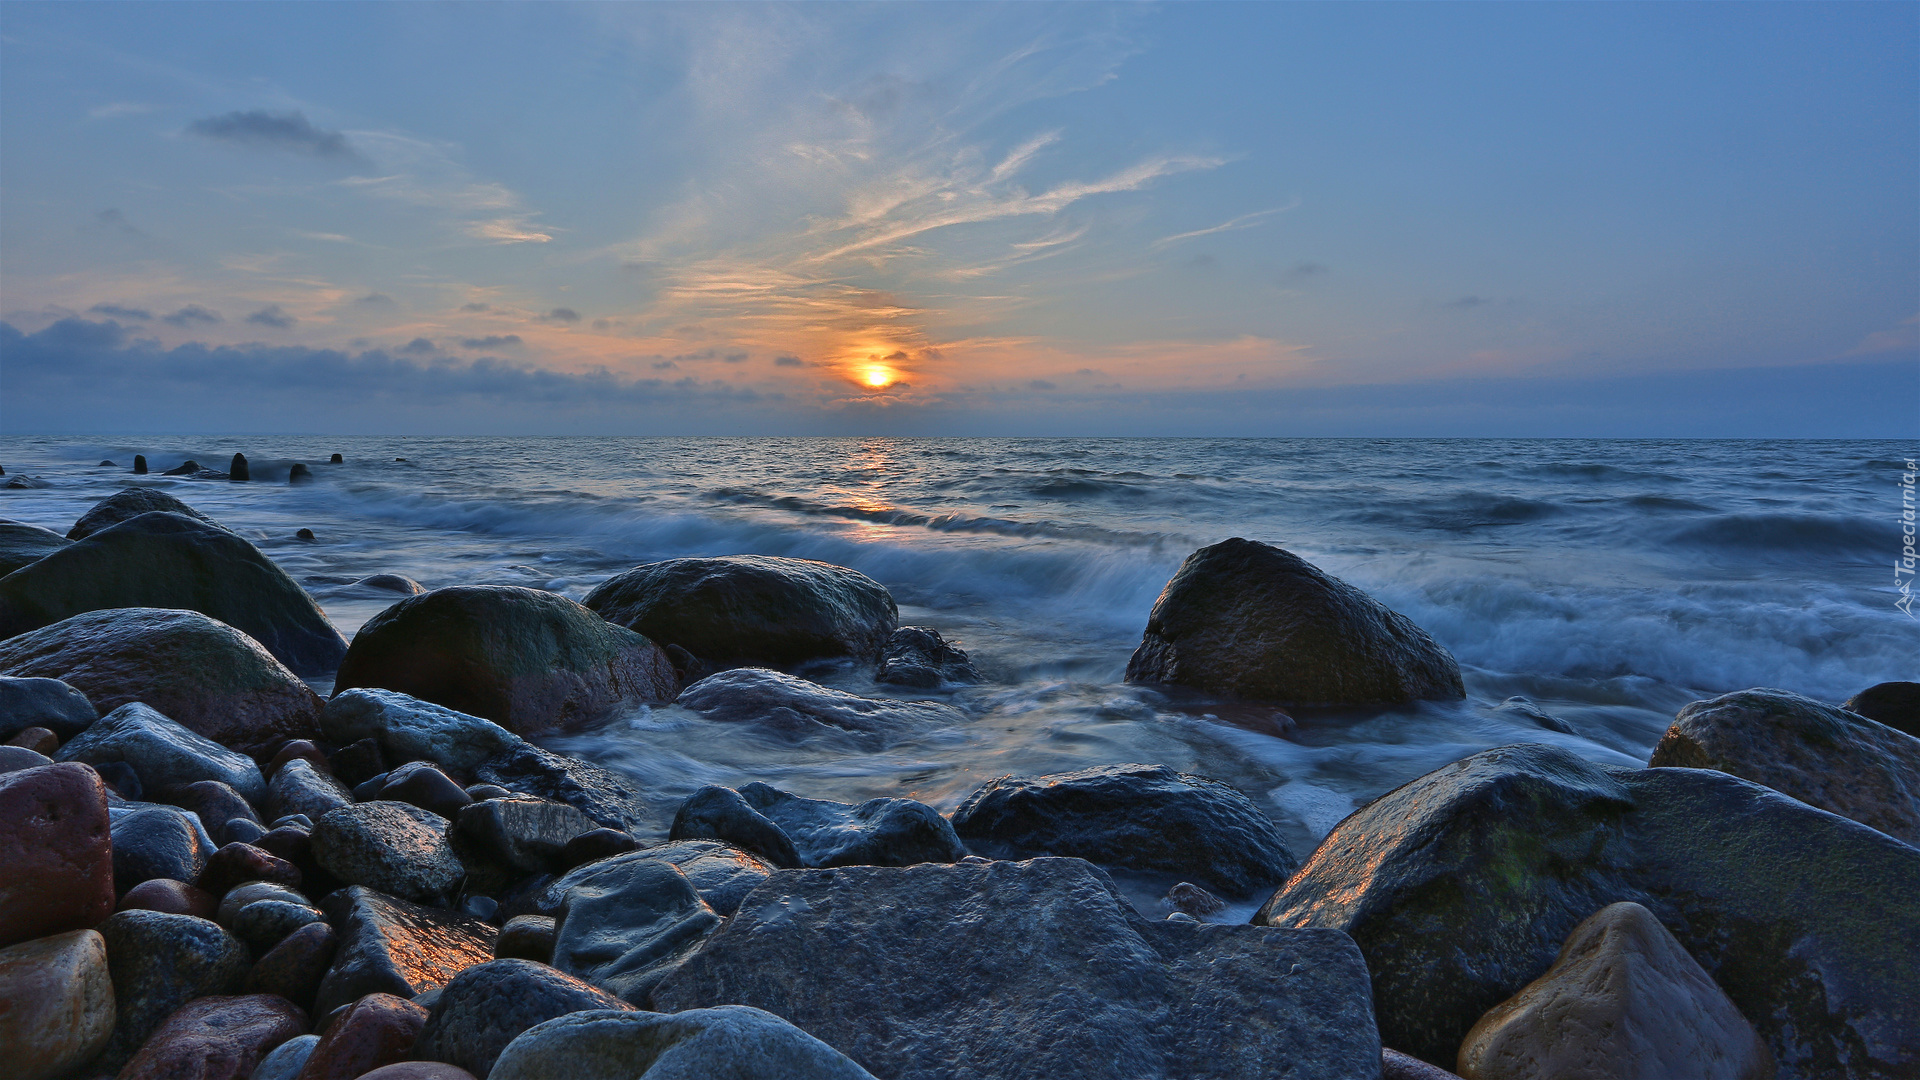 Kamienie, Morze, Zachód słońca